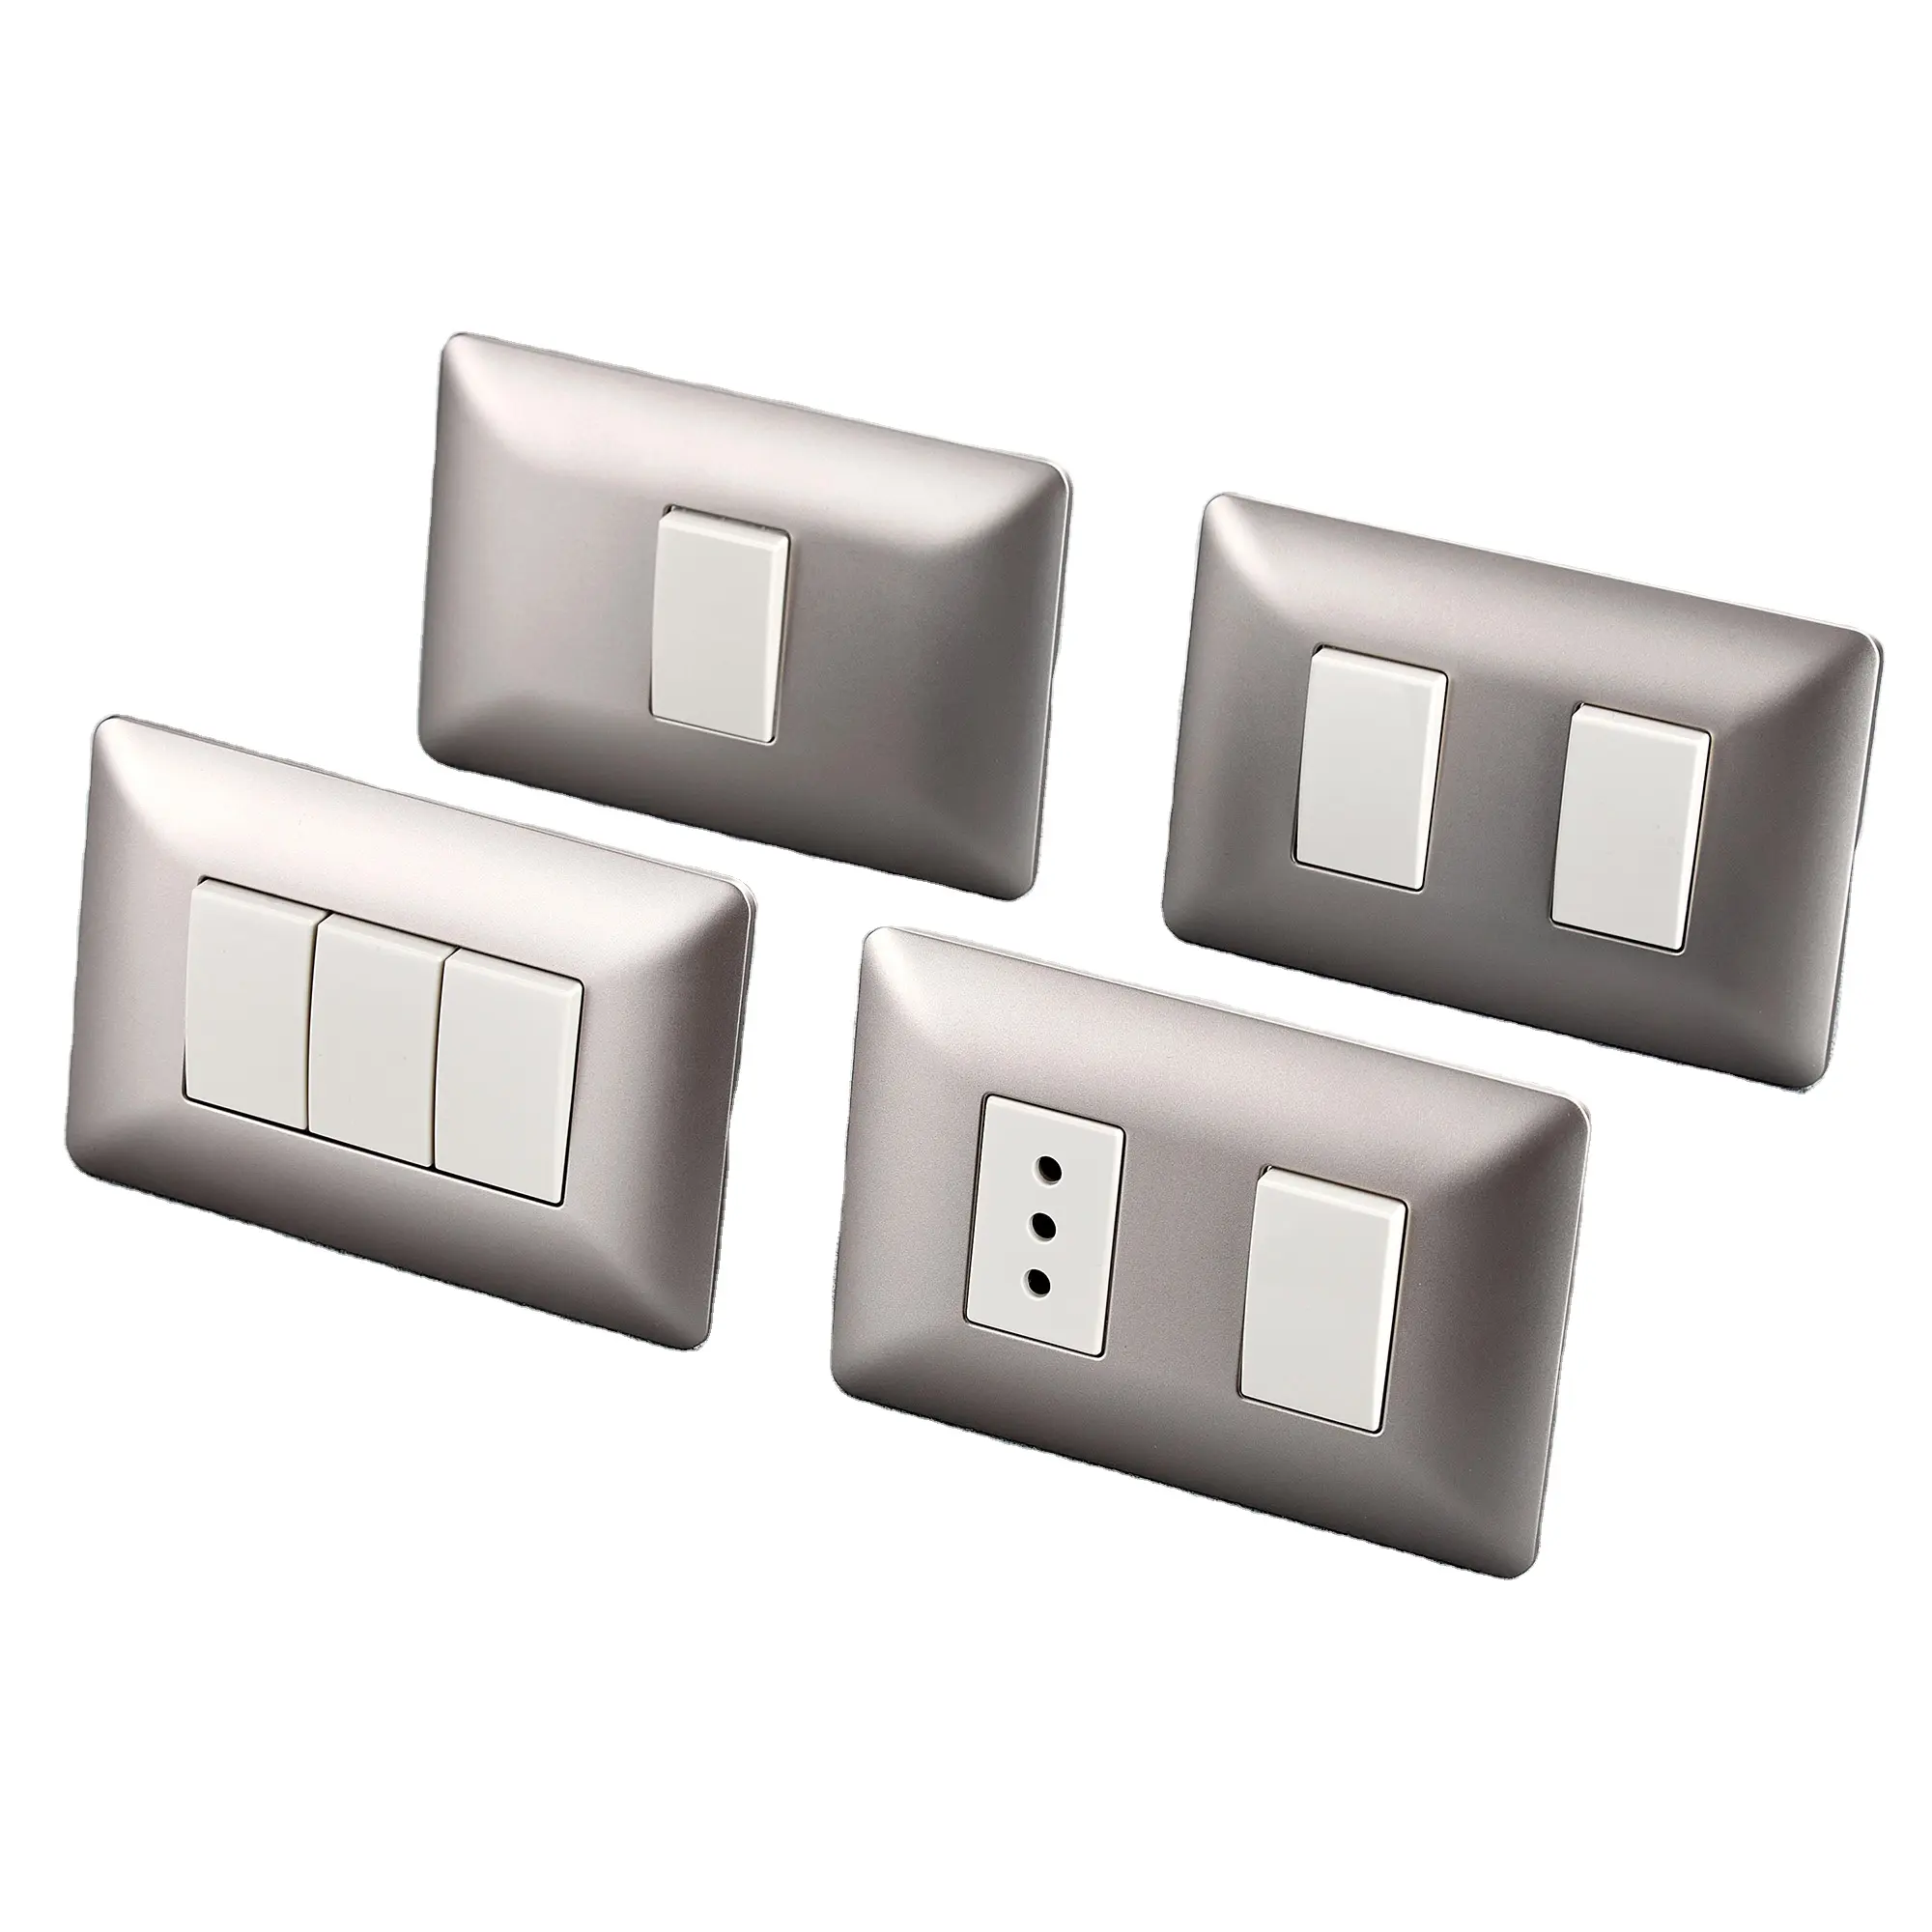 Interruptores de luz eléctricos de pared para el hogar, toma de corriente MCS serie AM, muestra gratis, 118 tipos, calidad Superior